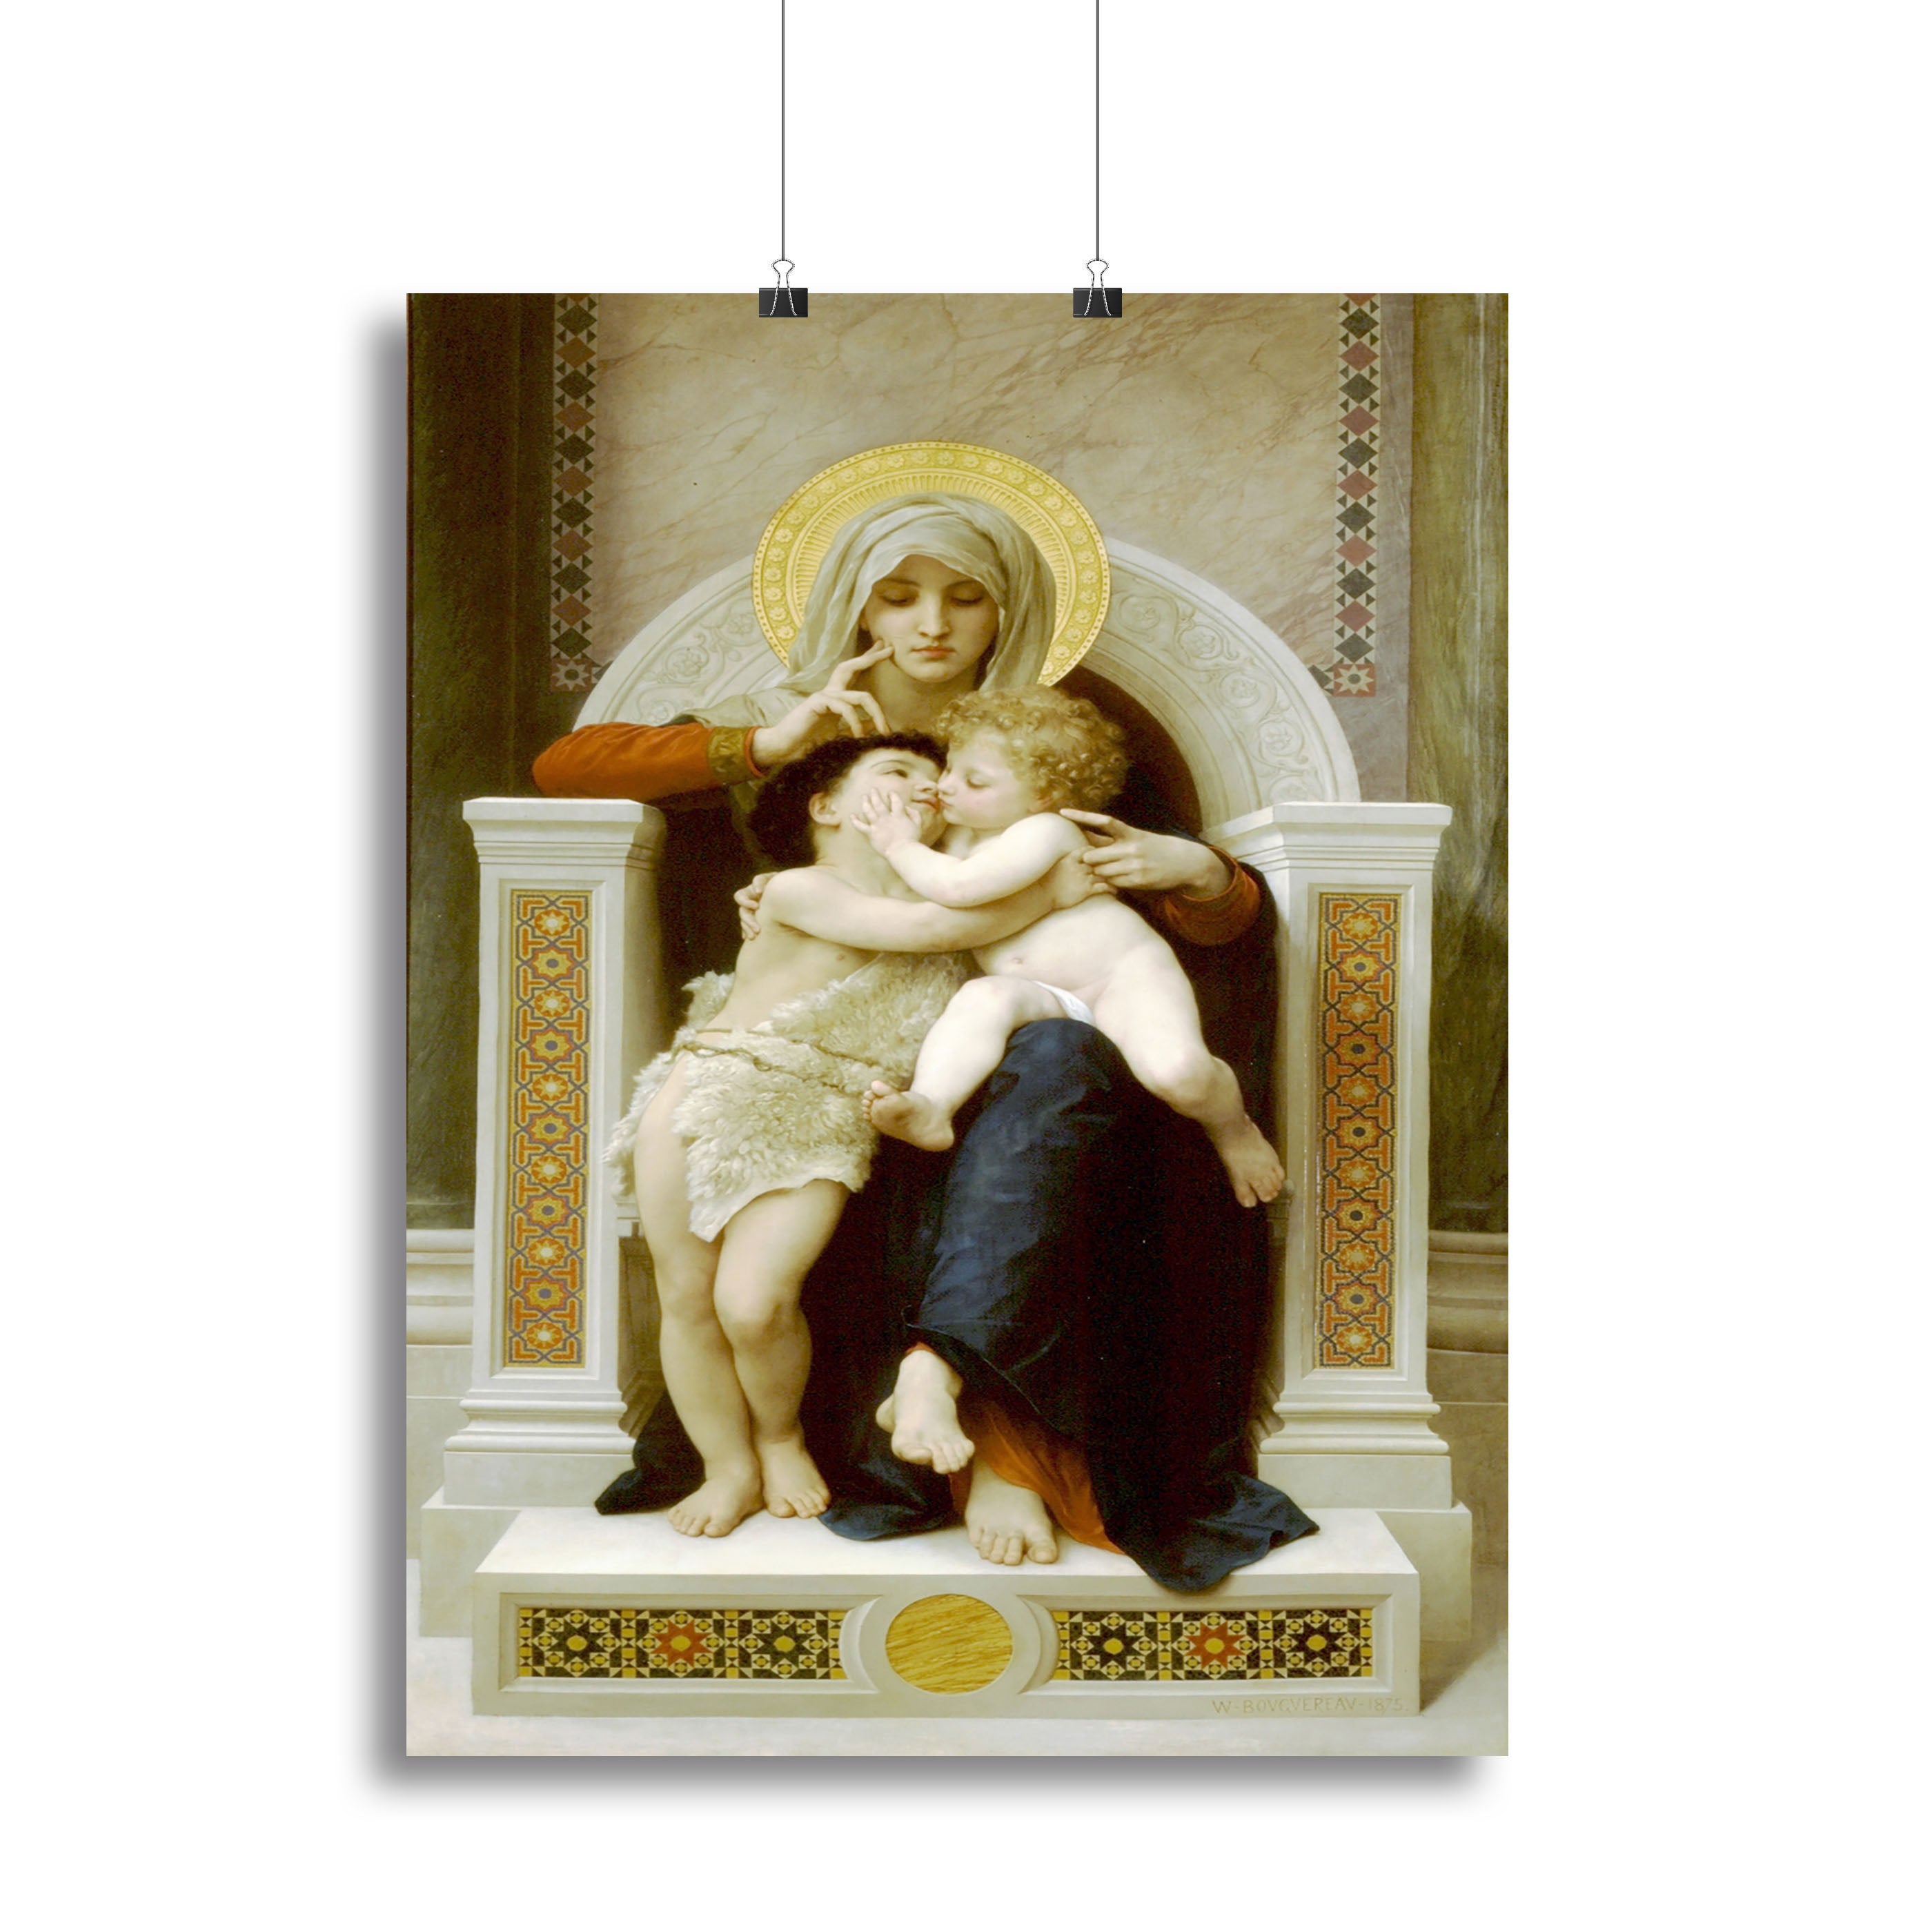 Vierge-Jesus SaintJeanBaptiste 1875 By Bouguereau Canvas Print or Poster - Canvas Art Rocks - 2